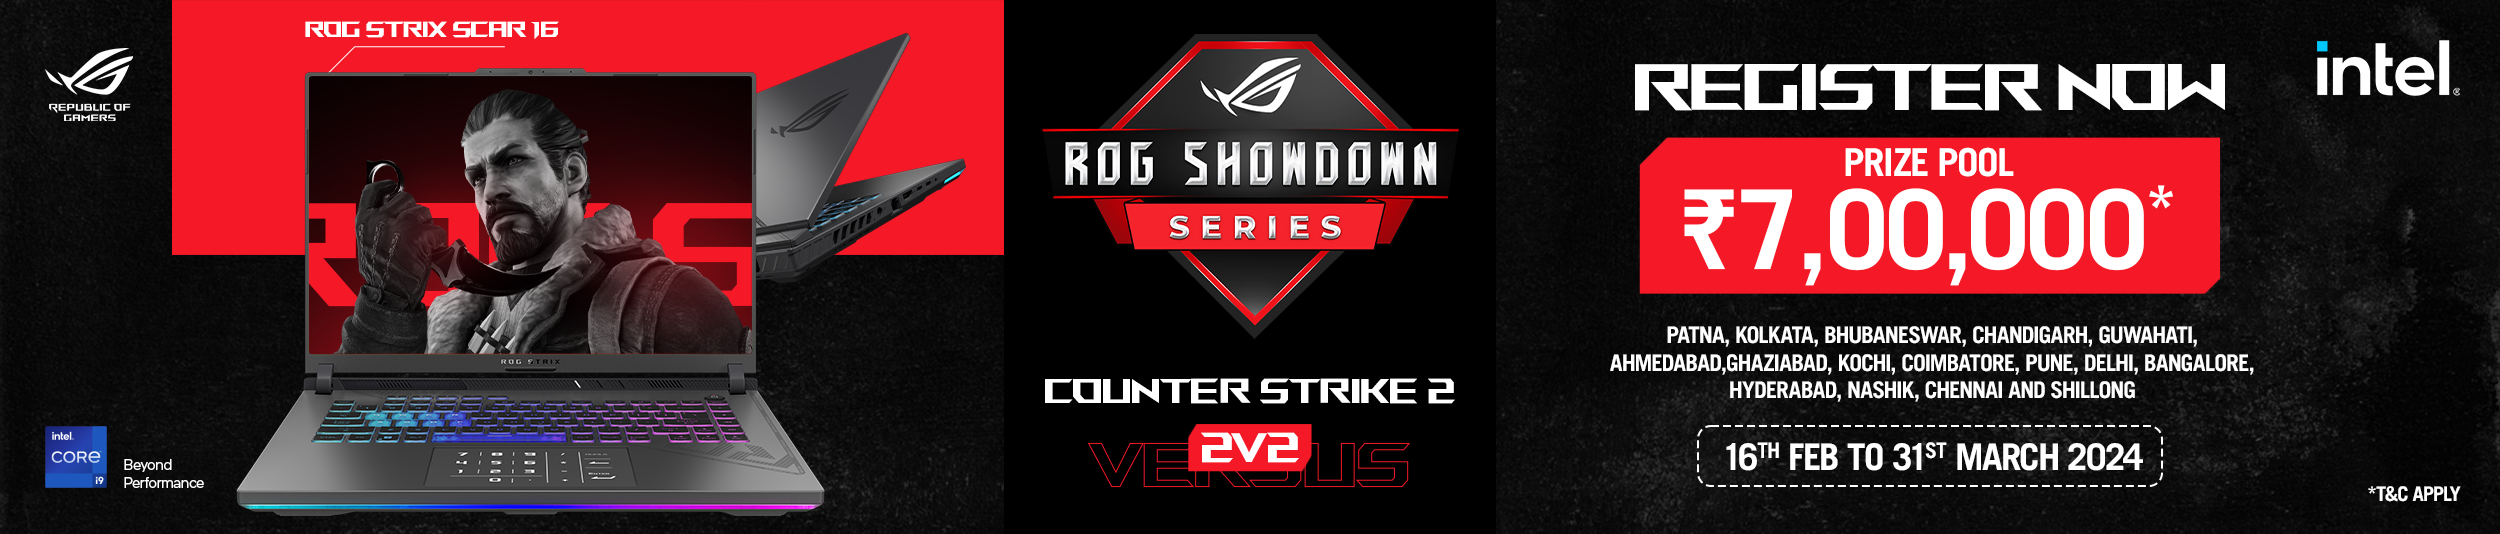 ROG Showdown Series PC version